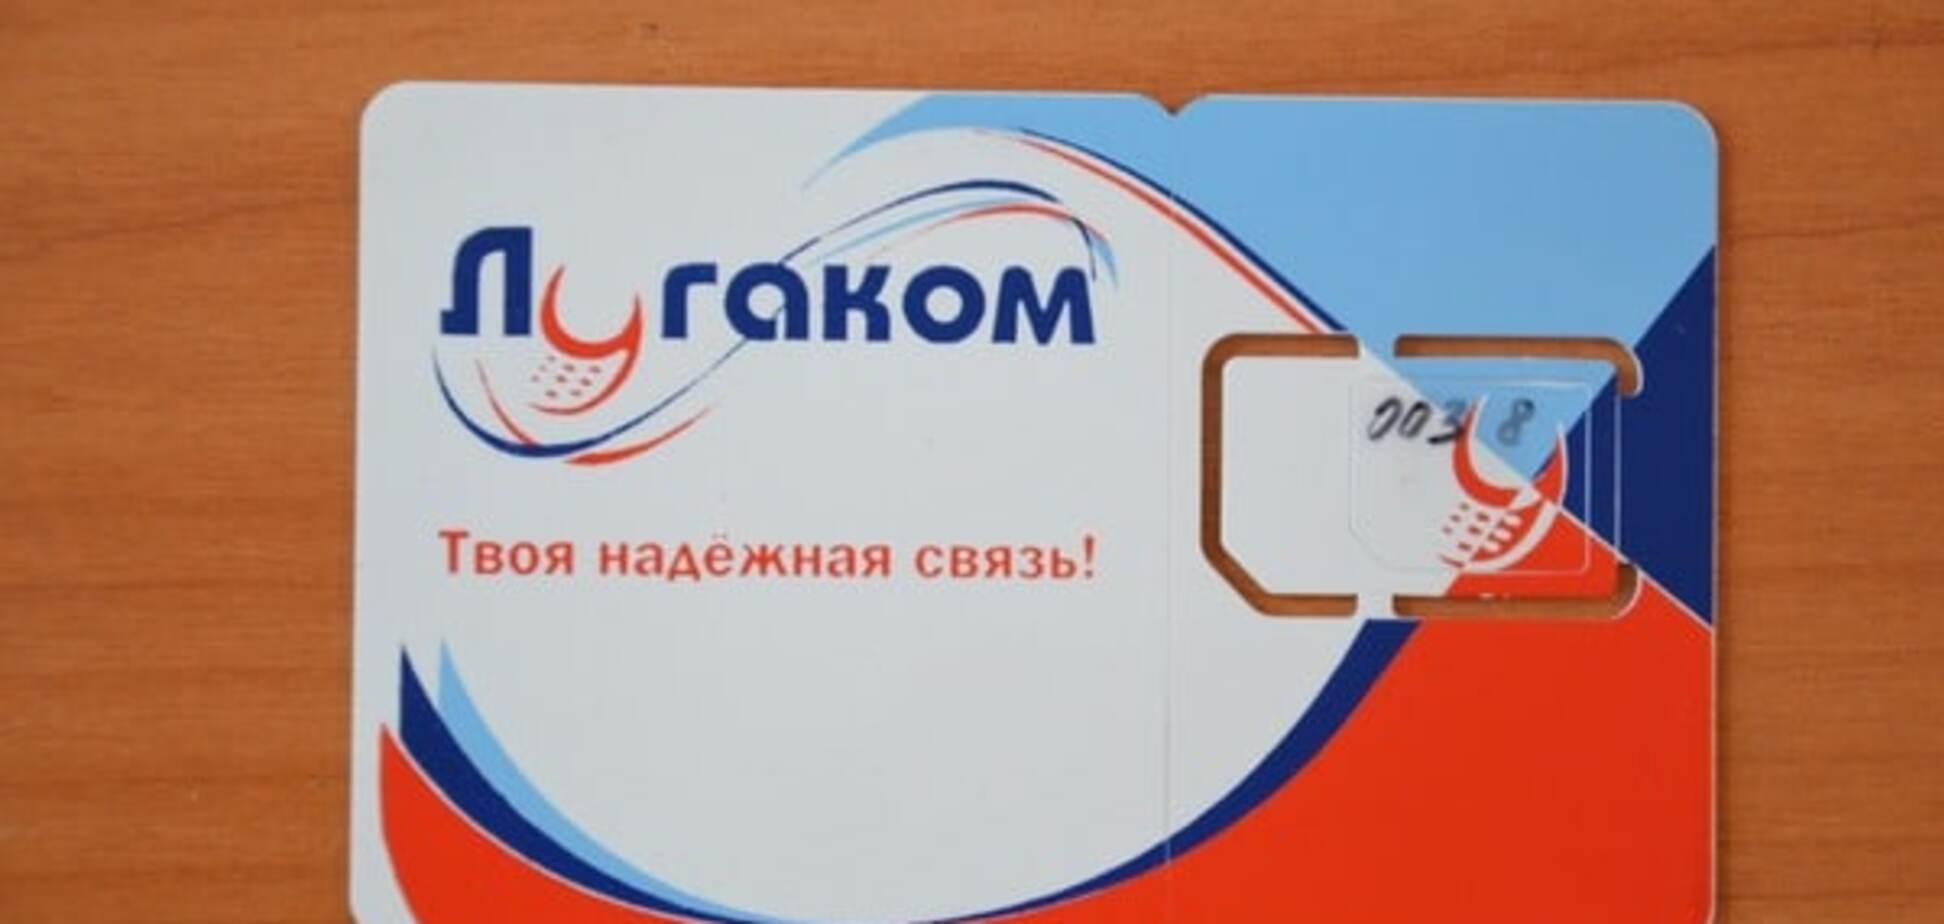 Звоните в колокол: украинским мобильным операторам запретили принимать звонки 'Лугакома'